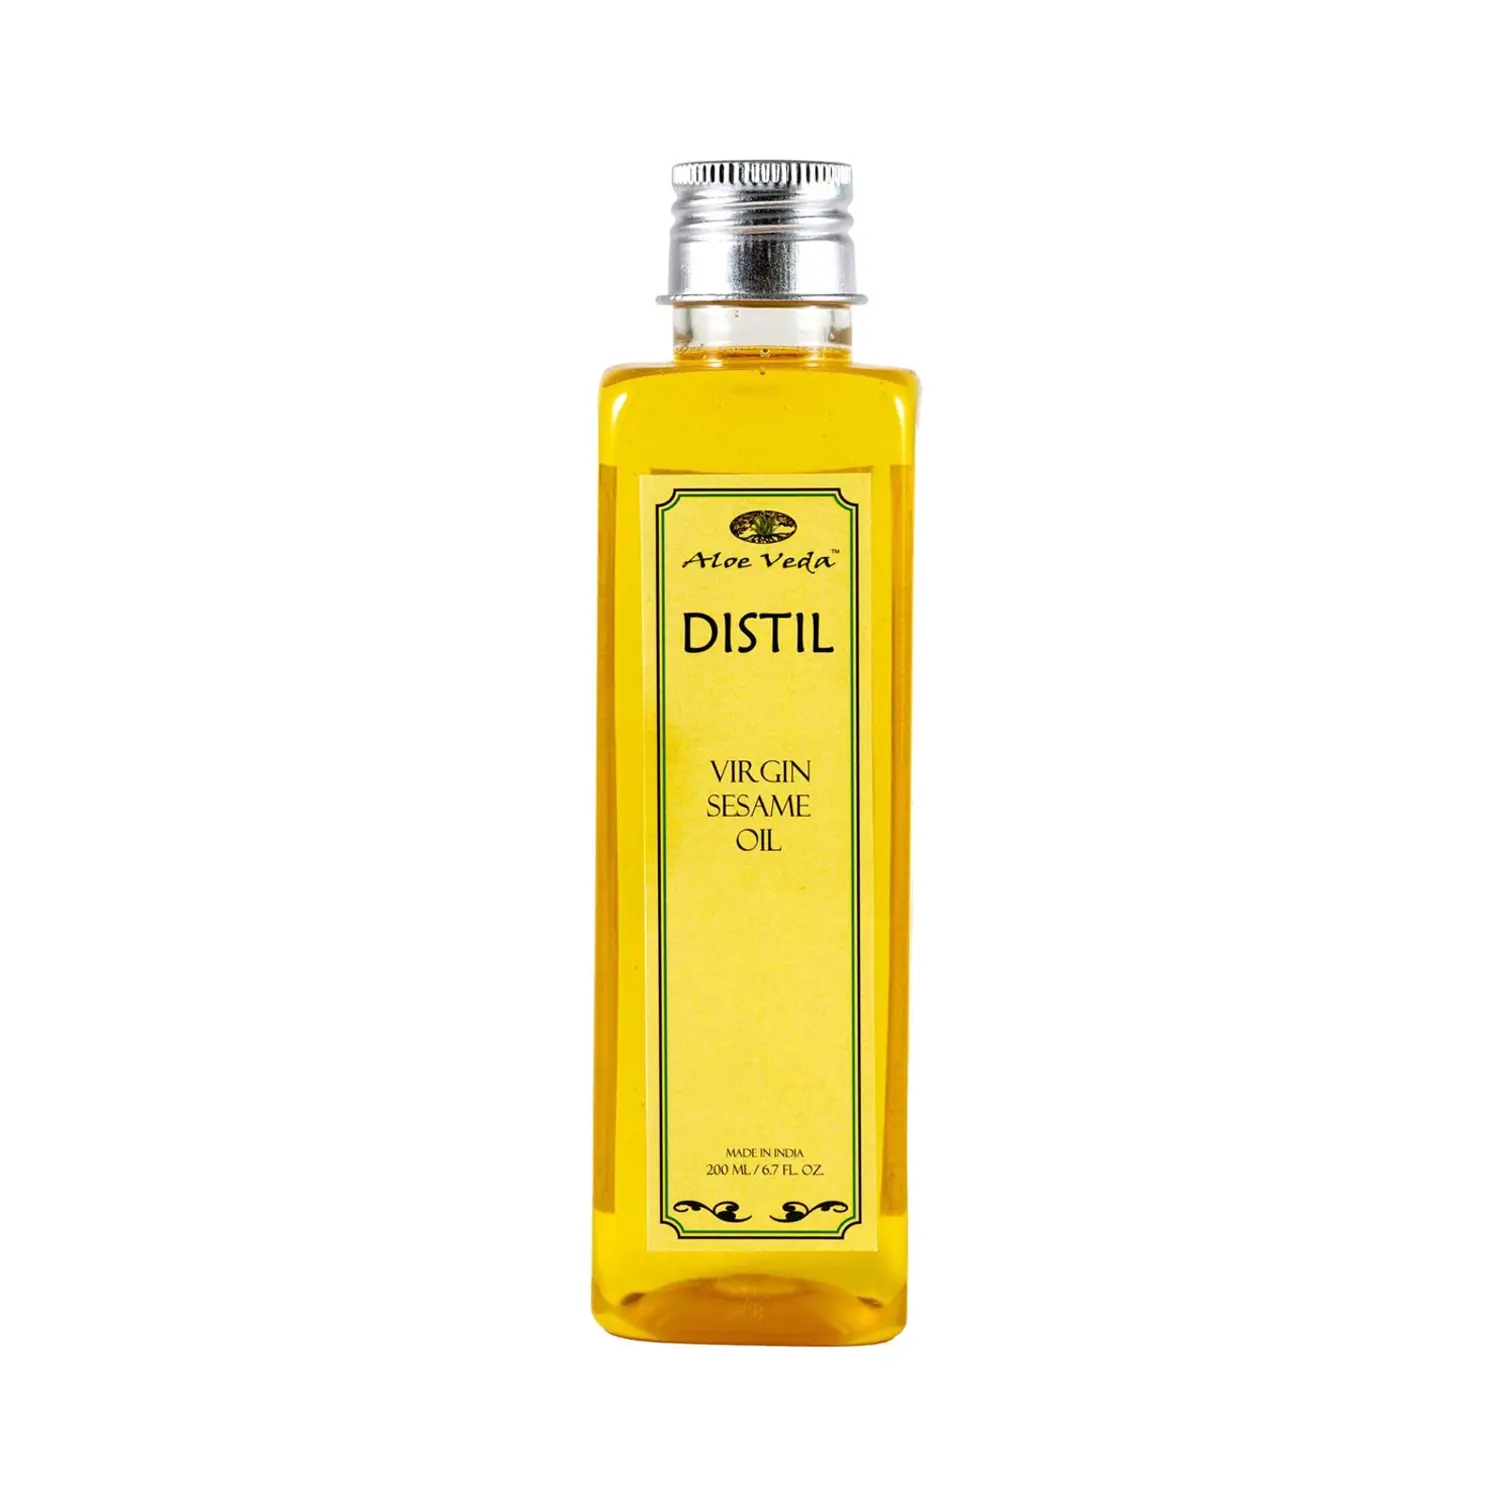 Aloe Veda | Aloe Veda Distil Virgin Sesame Oil (200ml)